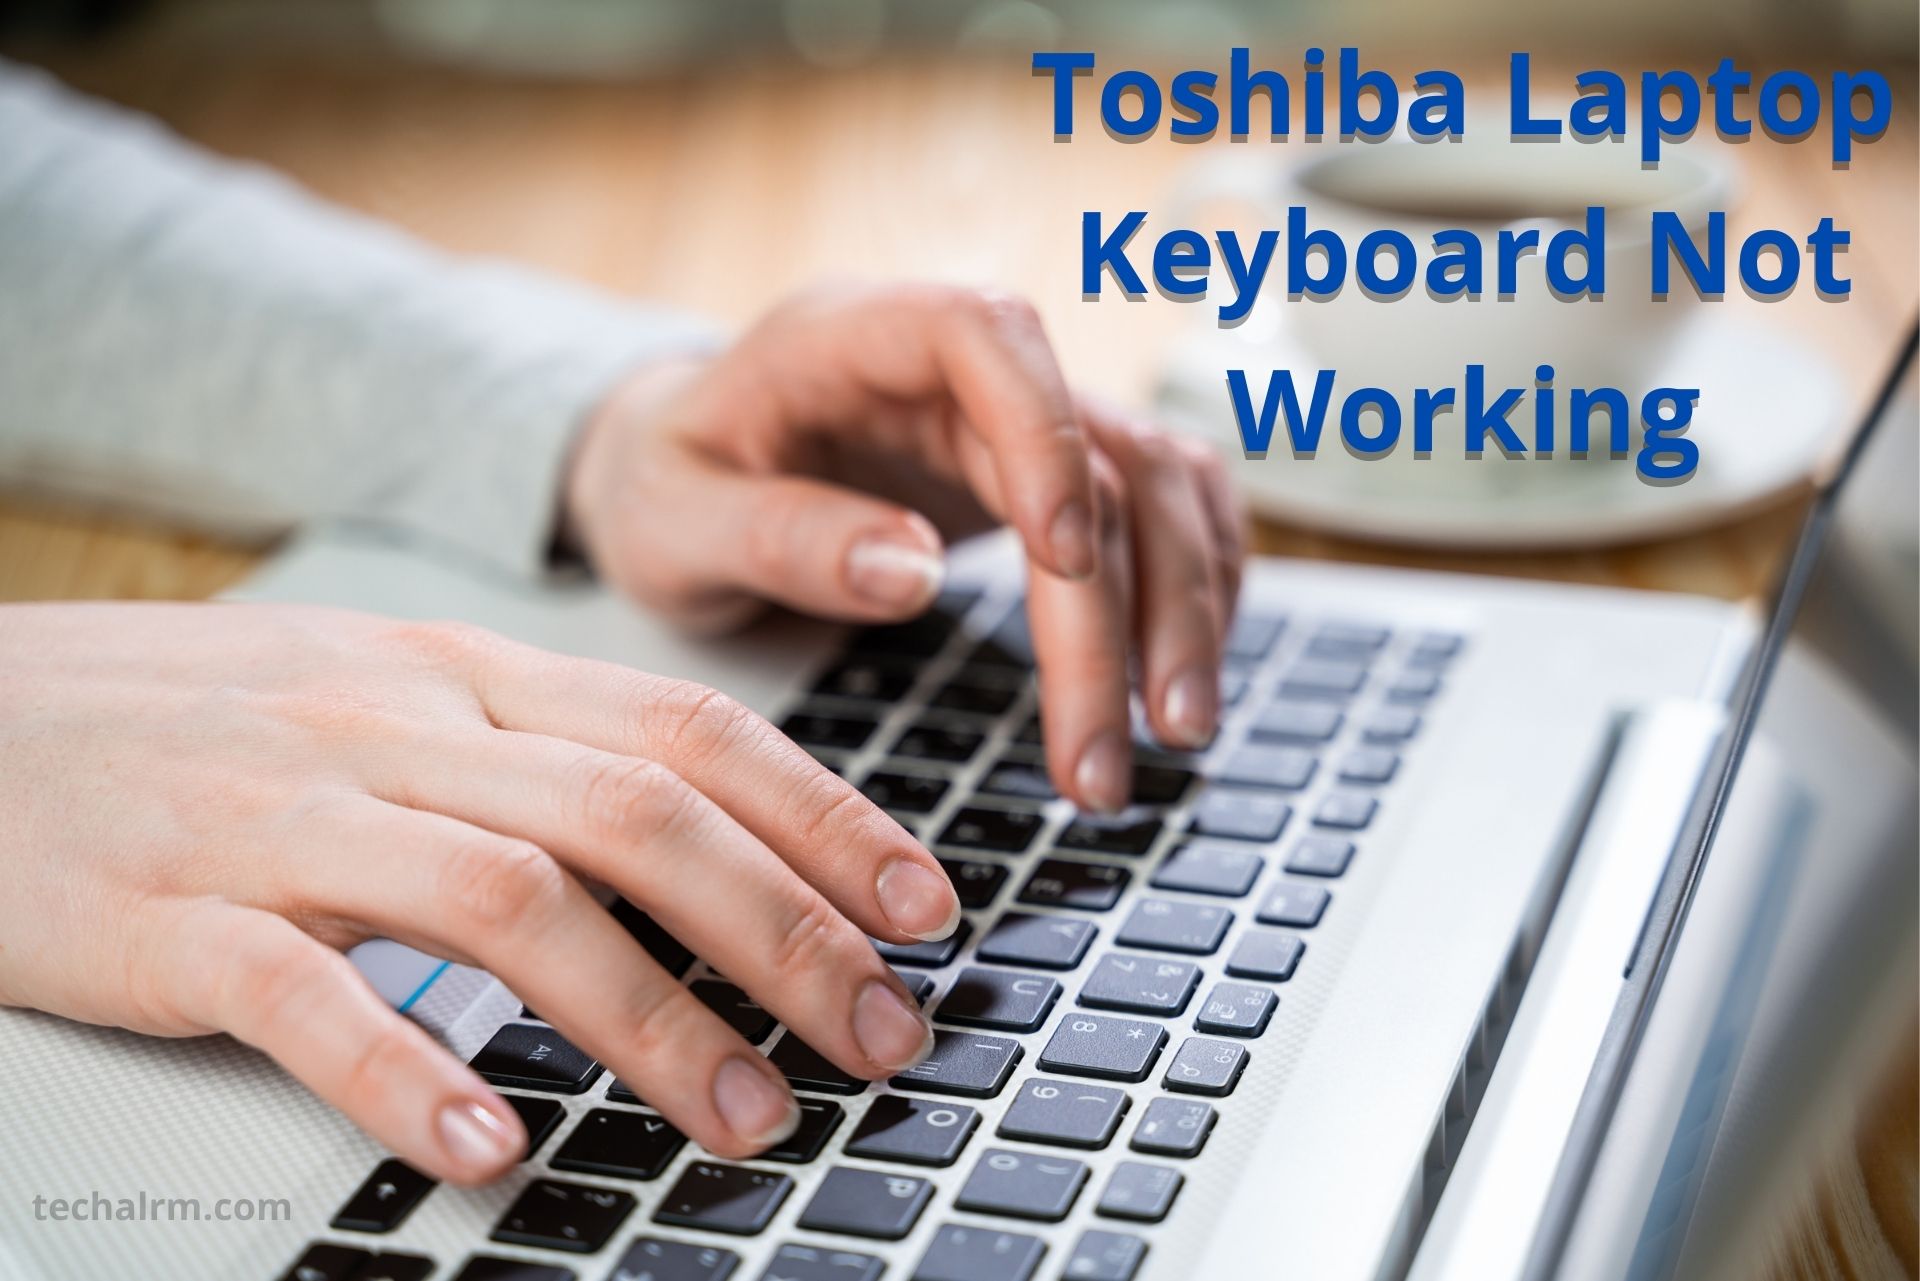 toshiba laptop keyboard not working